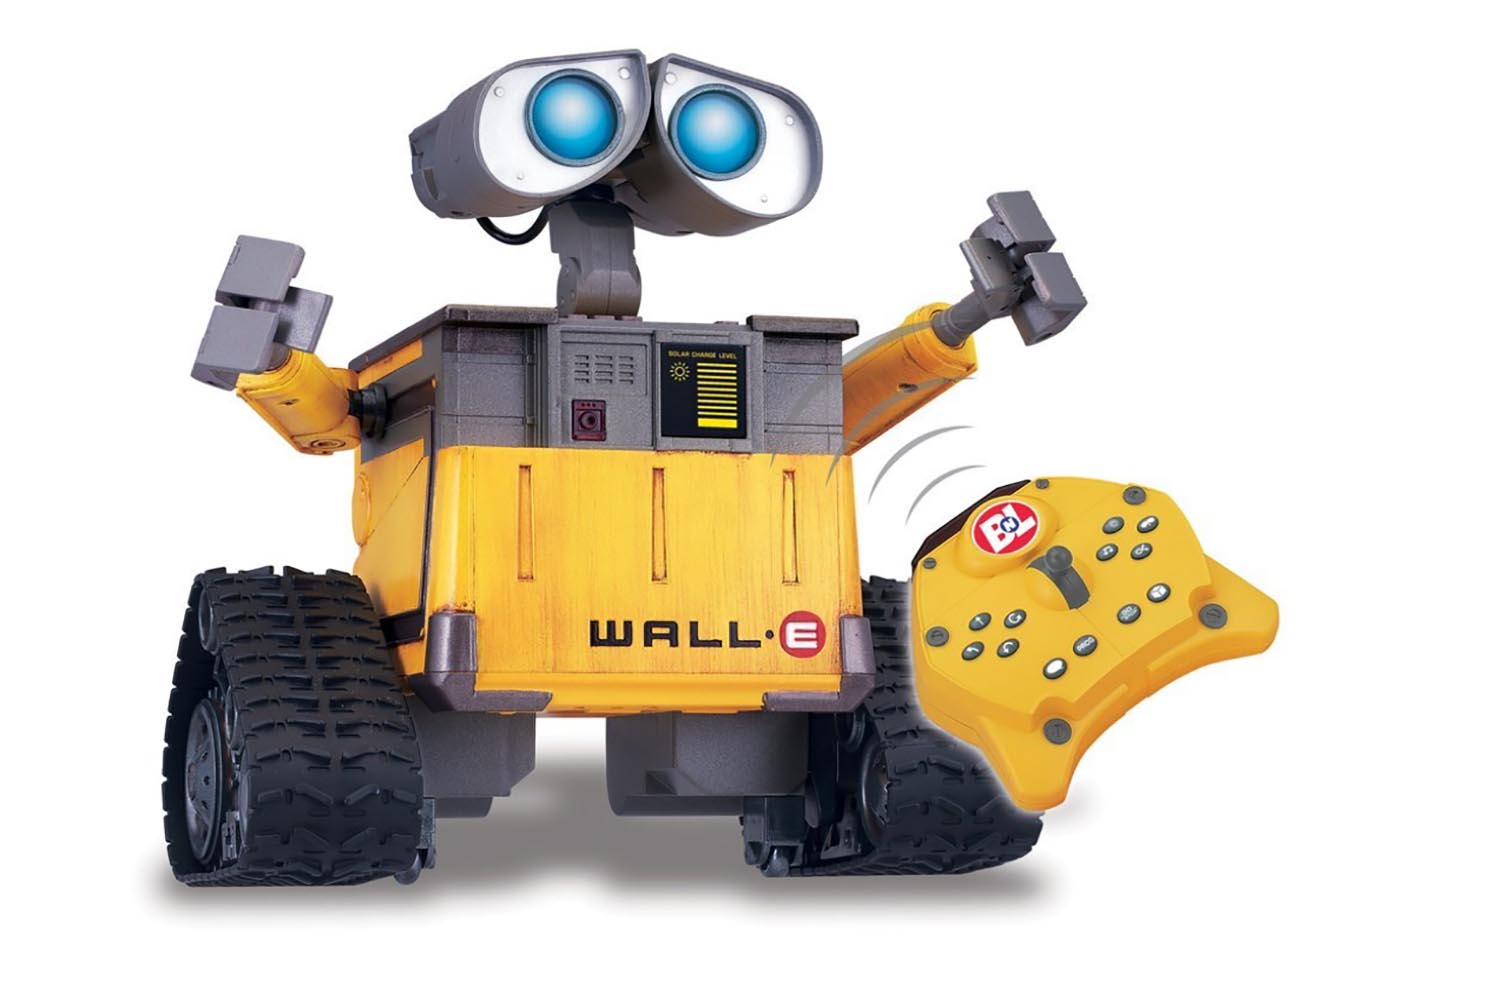 5. Disney Pixar's Wall-E U-Command Remote Control Robot Clapway